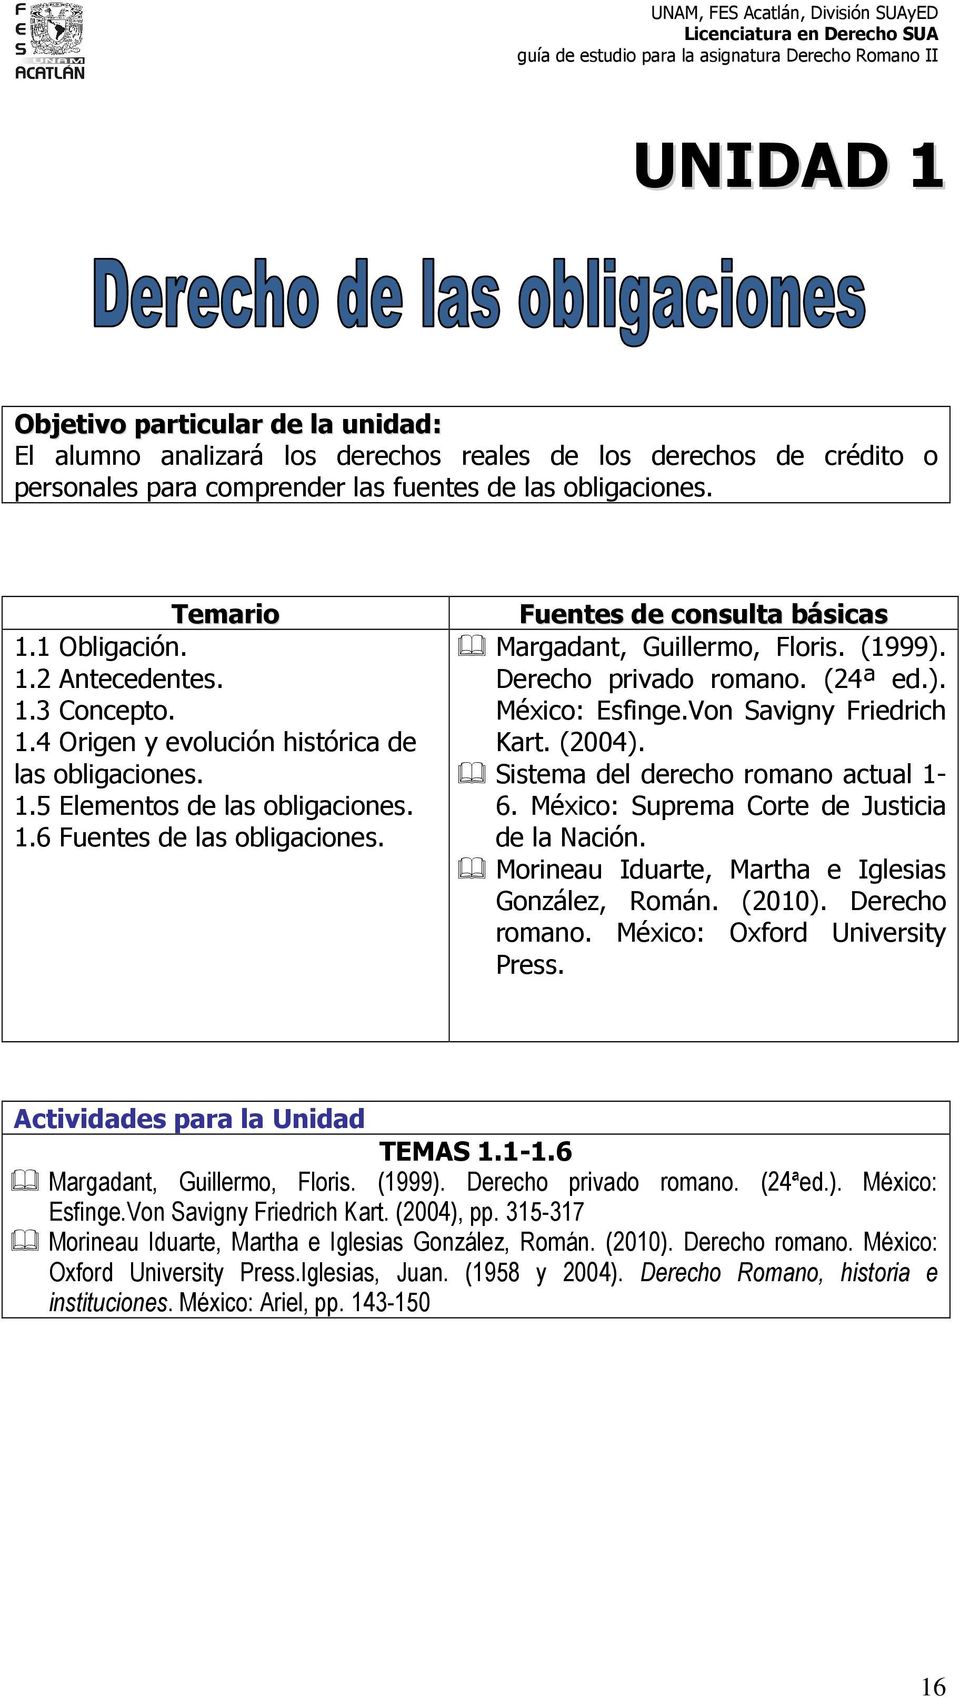 (1999). Derecho privado romano. (24ª ed.). México: Esfinge.Von Savigny Friedrich Kart. (2004). Sistema del derecho romano actual 1-6. México: Suprema Corte de Justicia de la Nación.